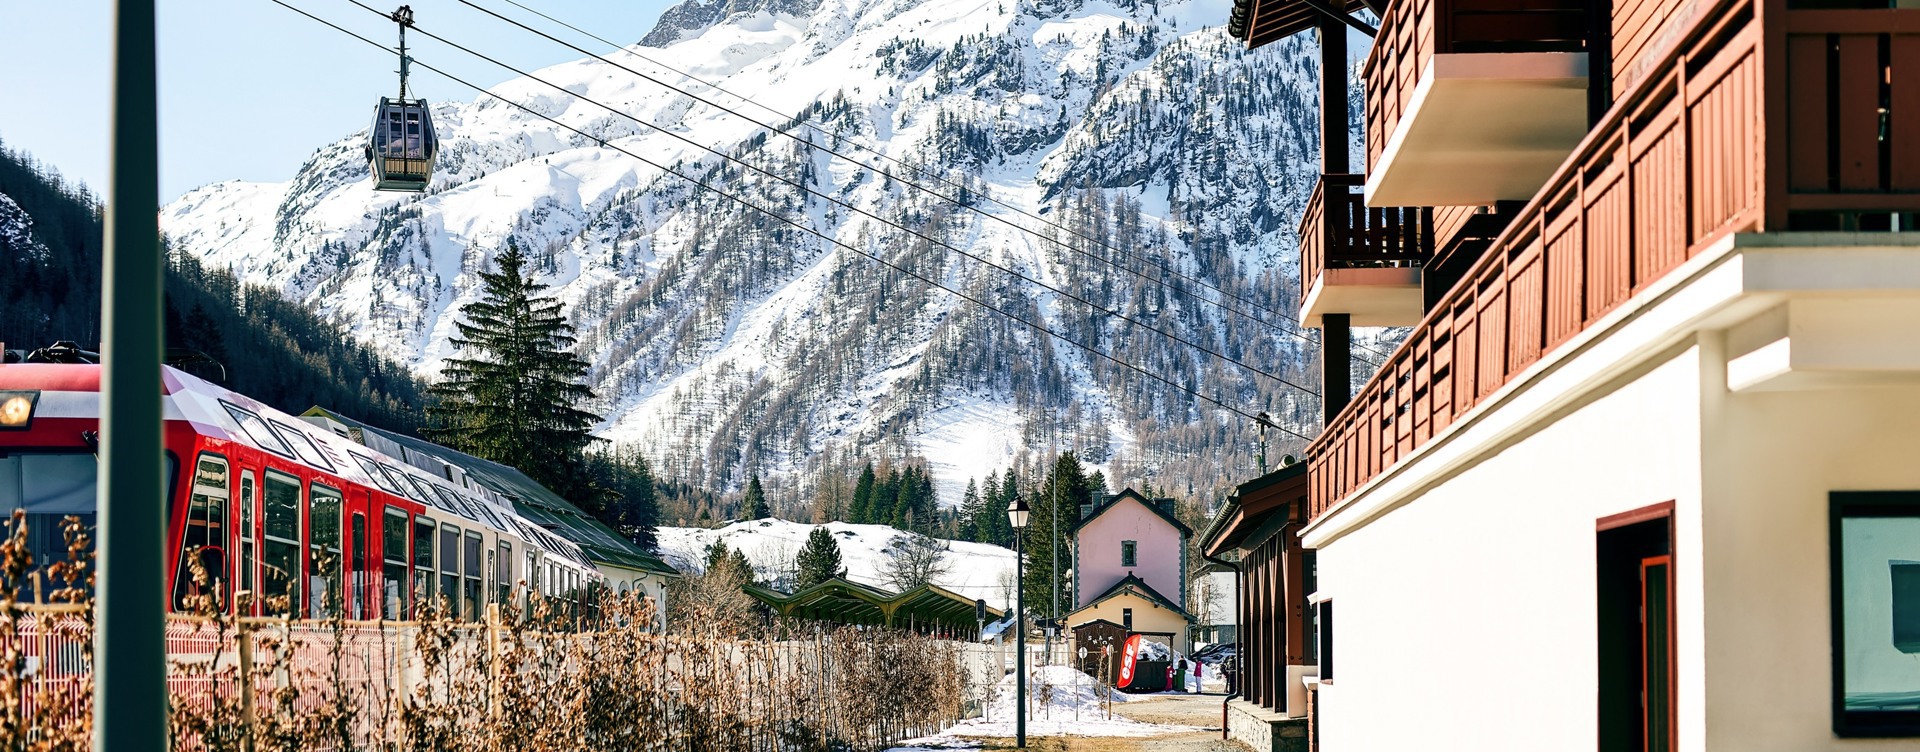 Genießen Sie das pulsierende Zentrum von Chamonix 
oder die umliegenden Skigebiete